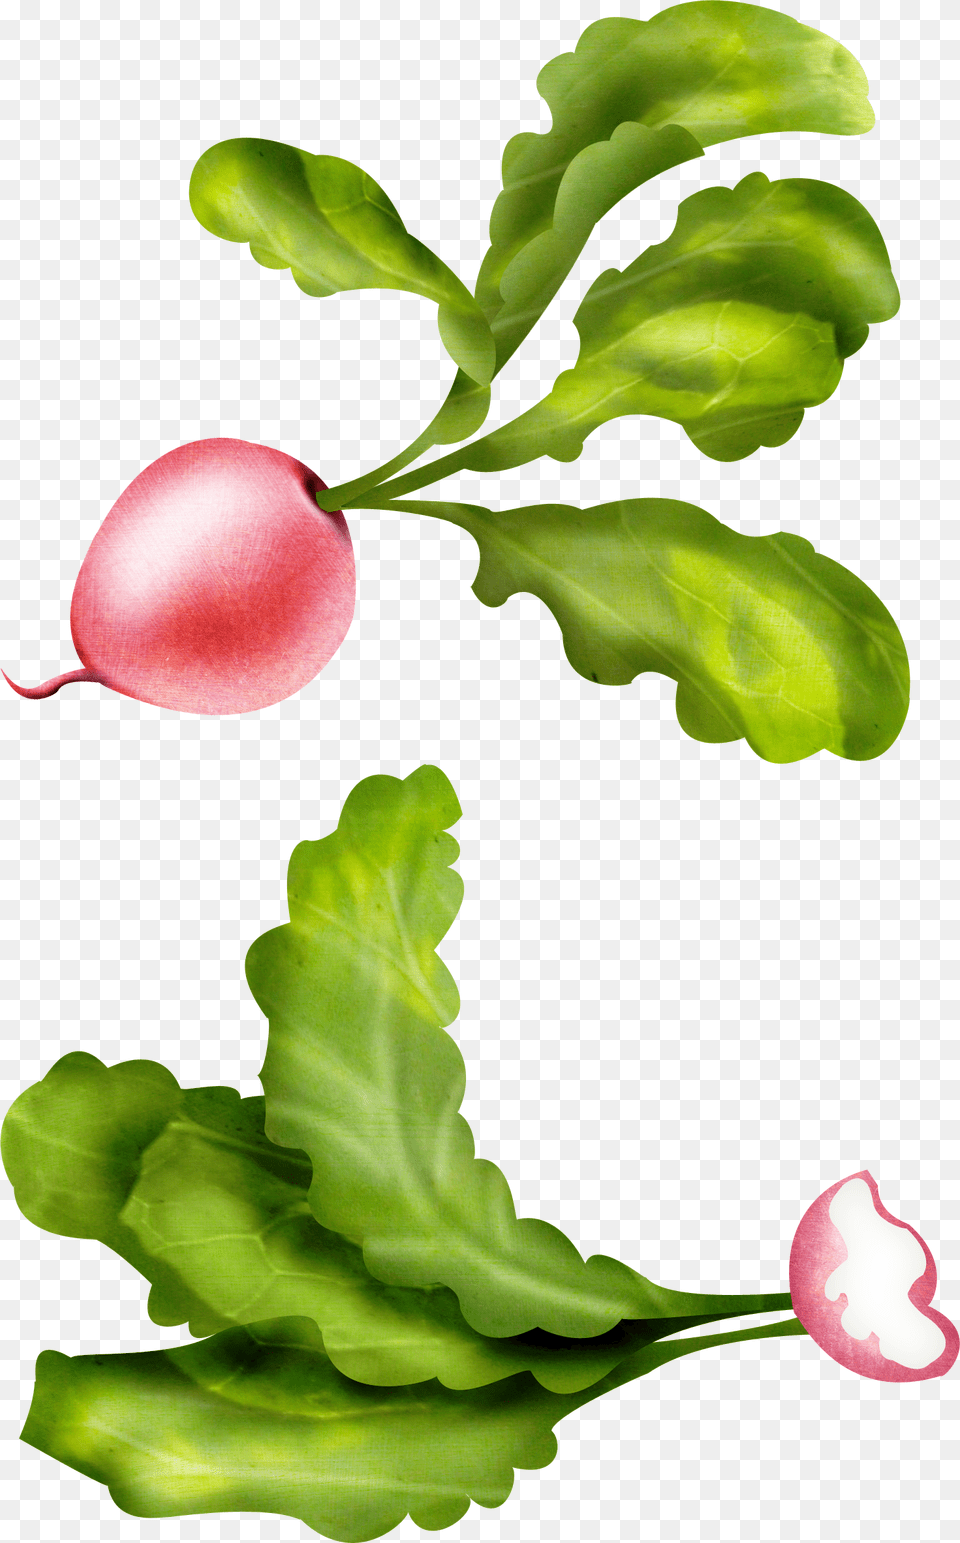 Carrot, Leaf, Plant, Flower, Petal Png